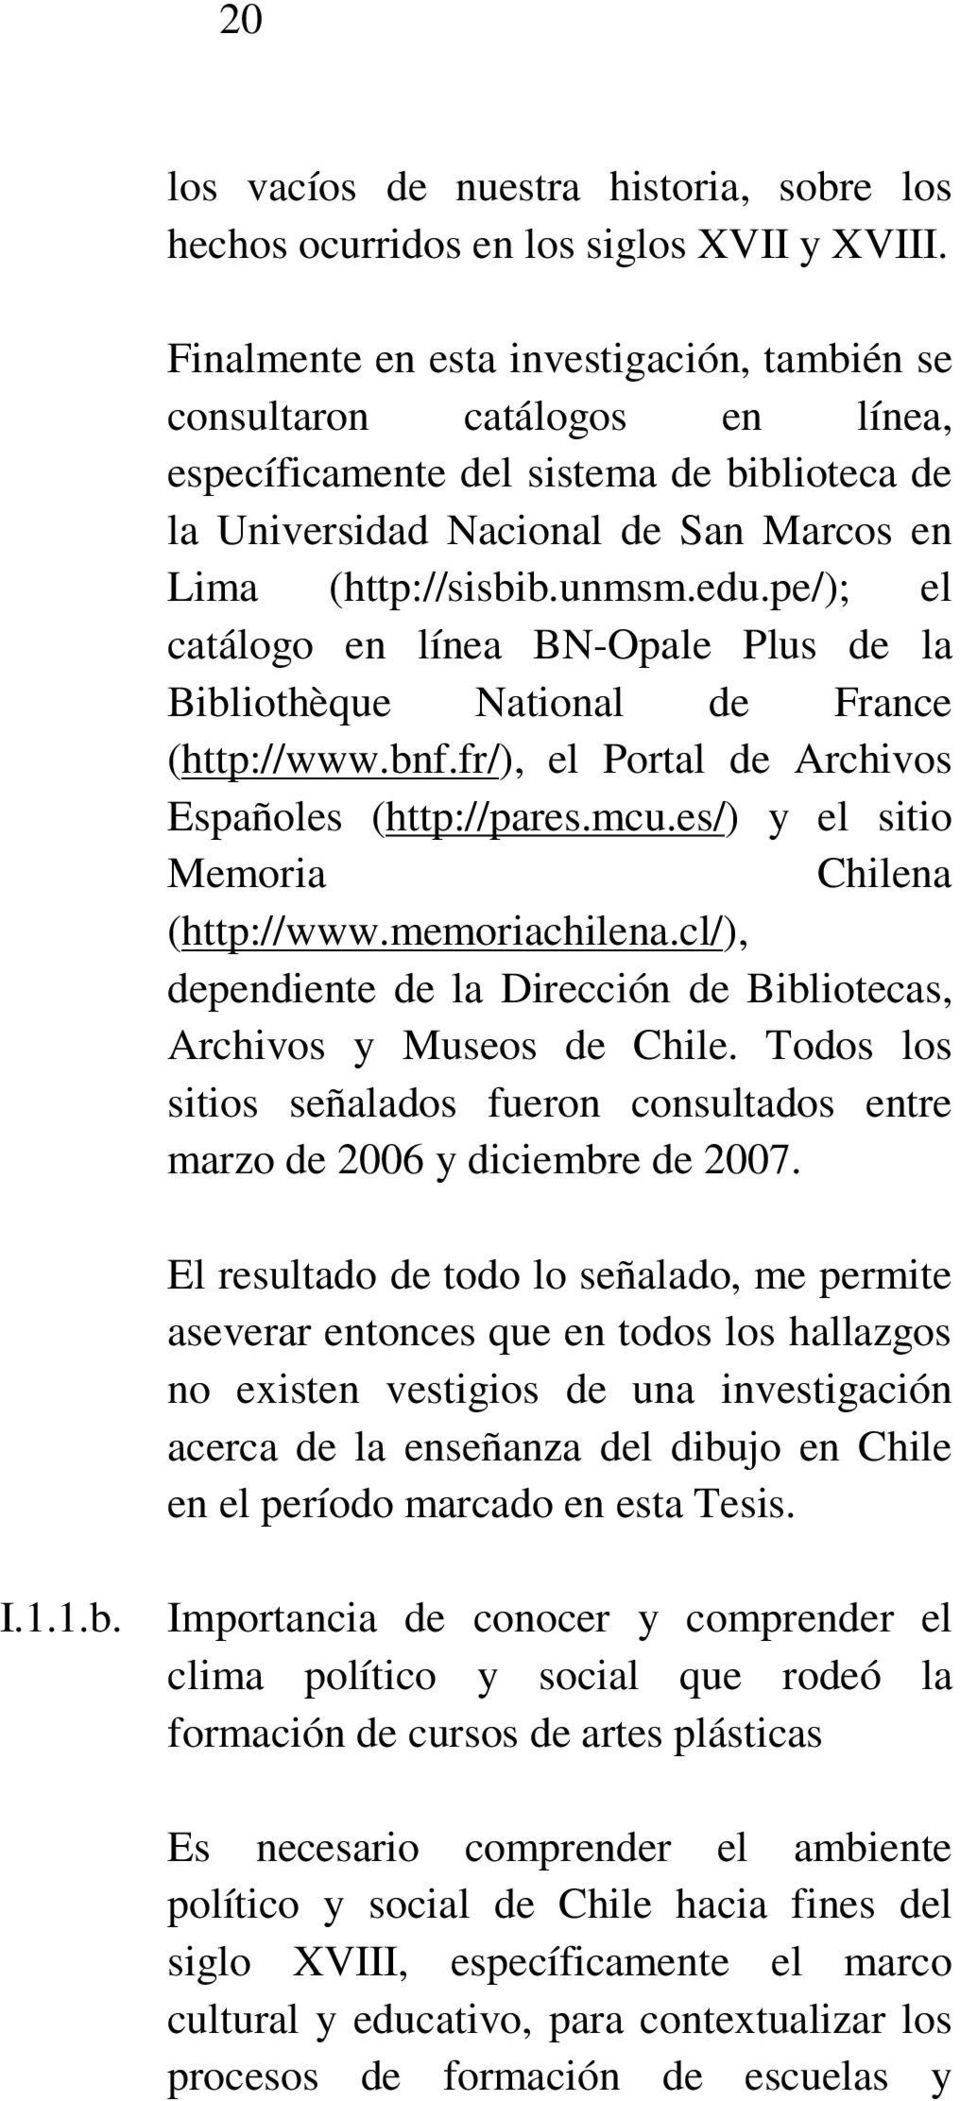 pe/); el catálogo en línea BN-Opale Plus de la Bibliothèque National de France (http://www.bnf.fr/), el Portal de Archivos Españoles (http://pares.mcu.es/) y el sitio Memoria Chilena (http://www.